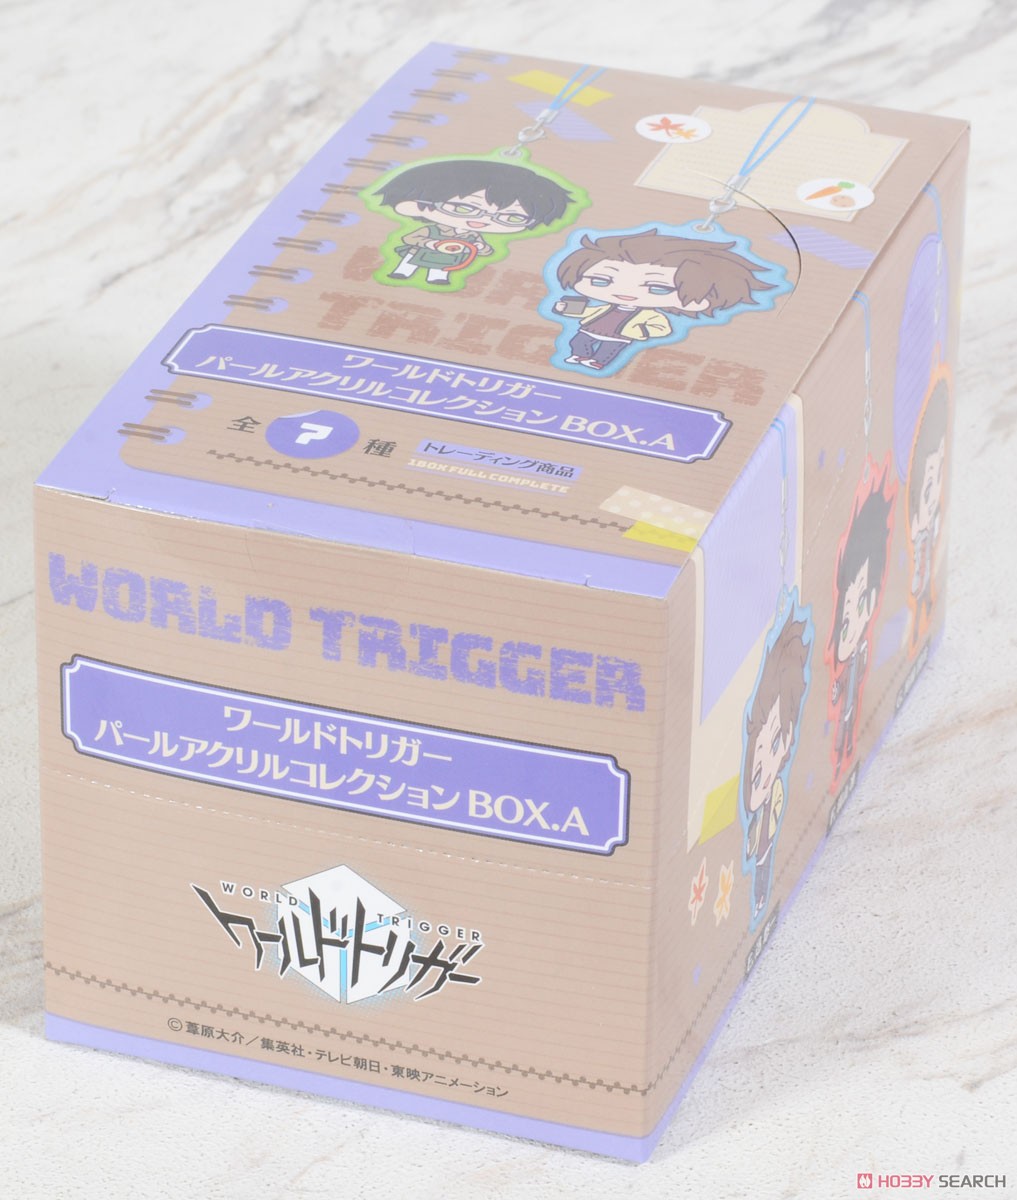 ワールドトリガー パールアクリルコレクション BOX.A (7個セット) (キャラクターグッズ) パッケージ1